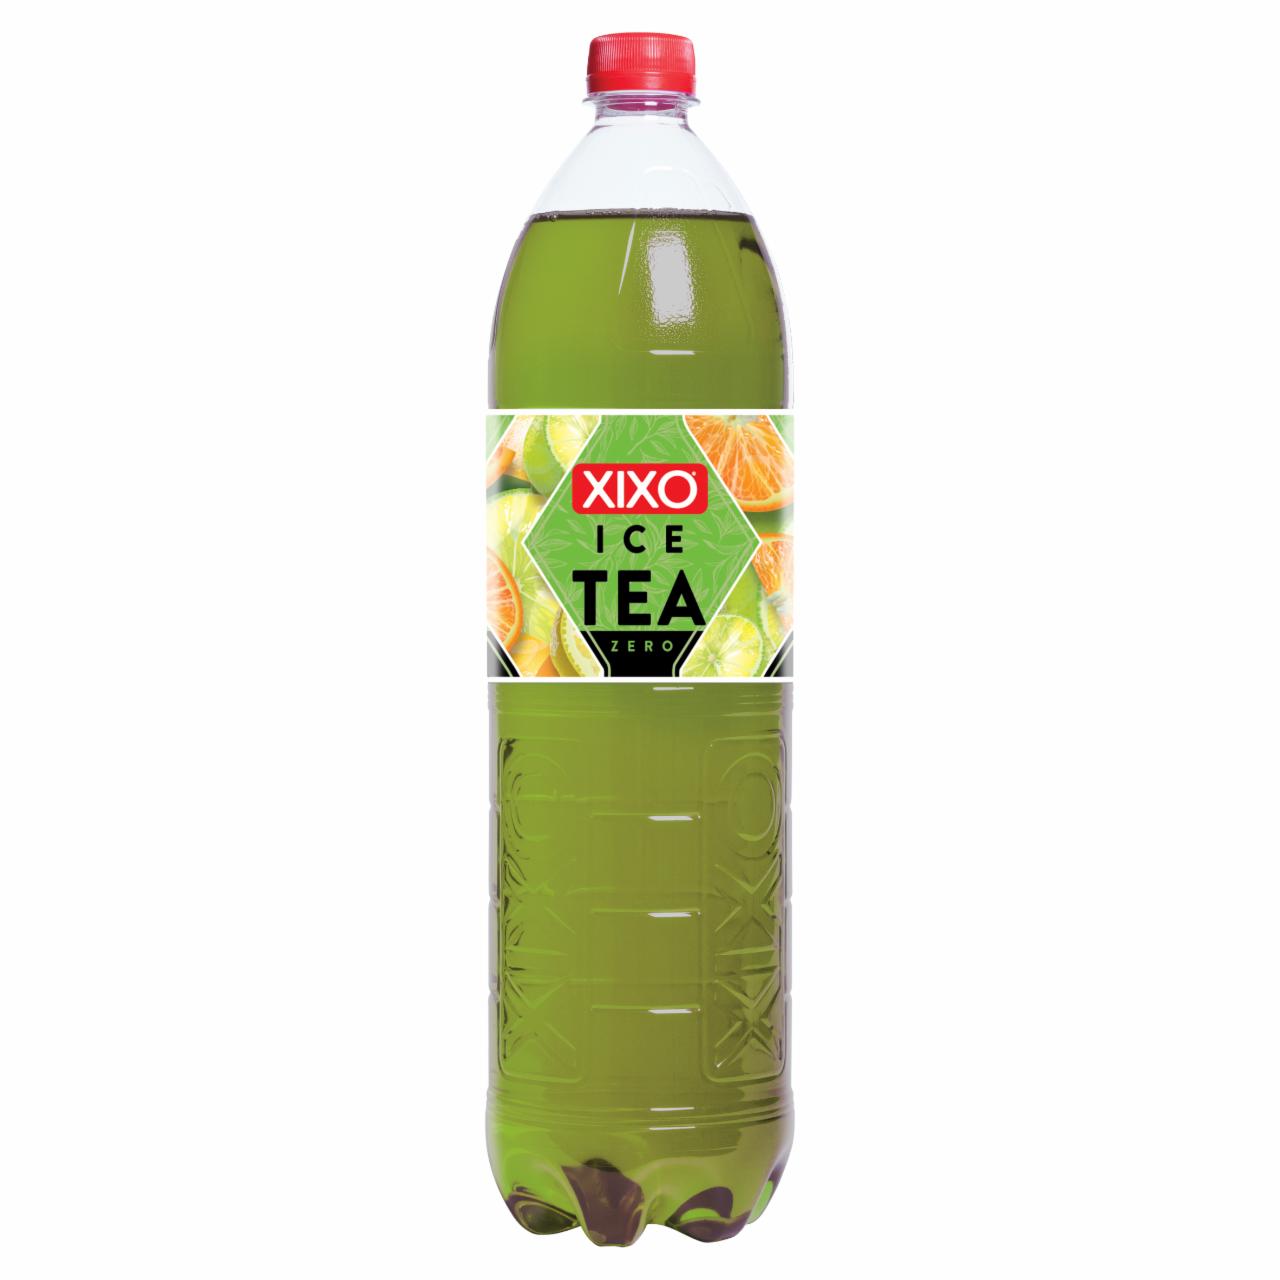 Képek - XIXO Ice Tea Zero citrusos zöld tea 1,5 l